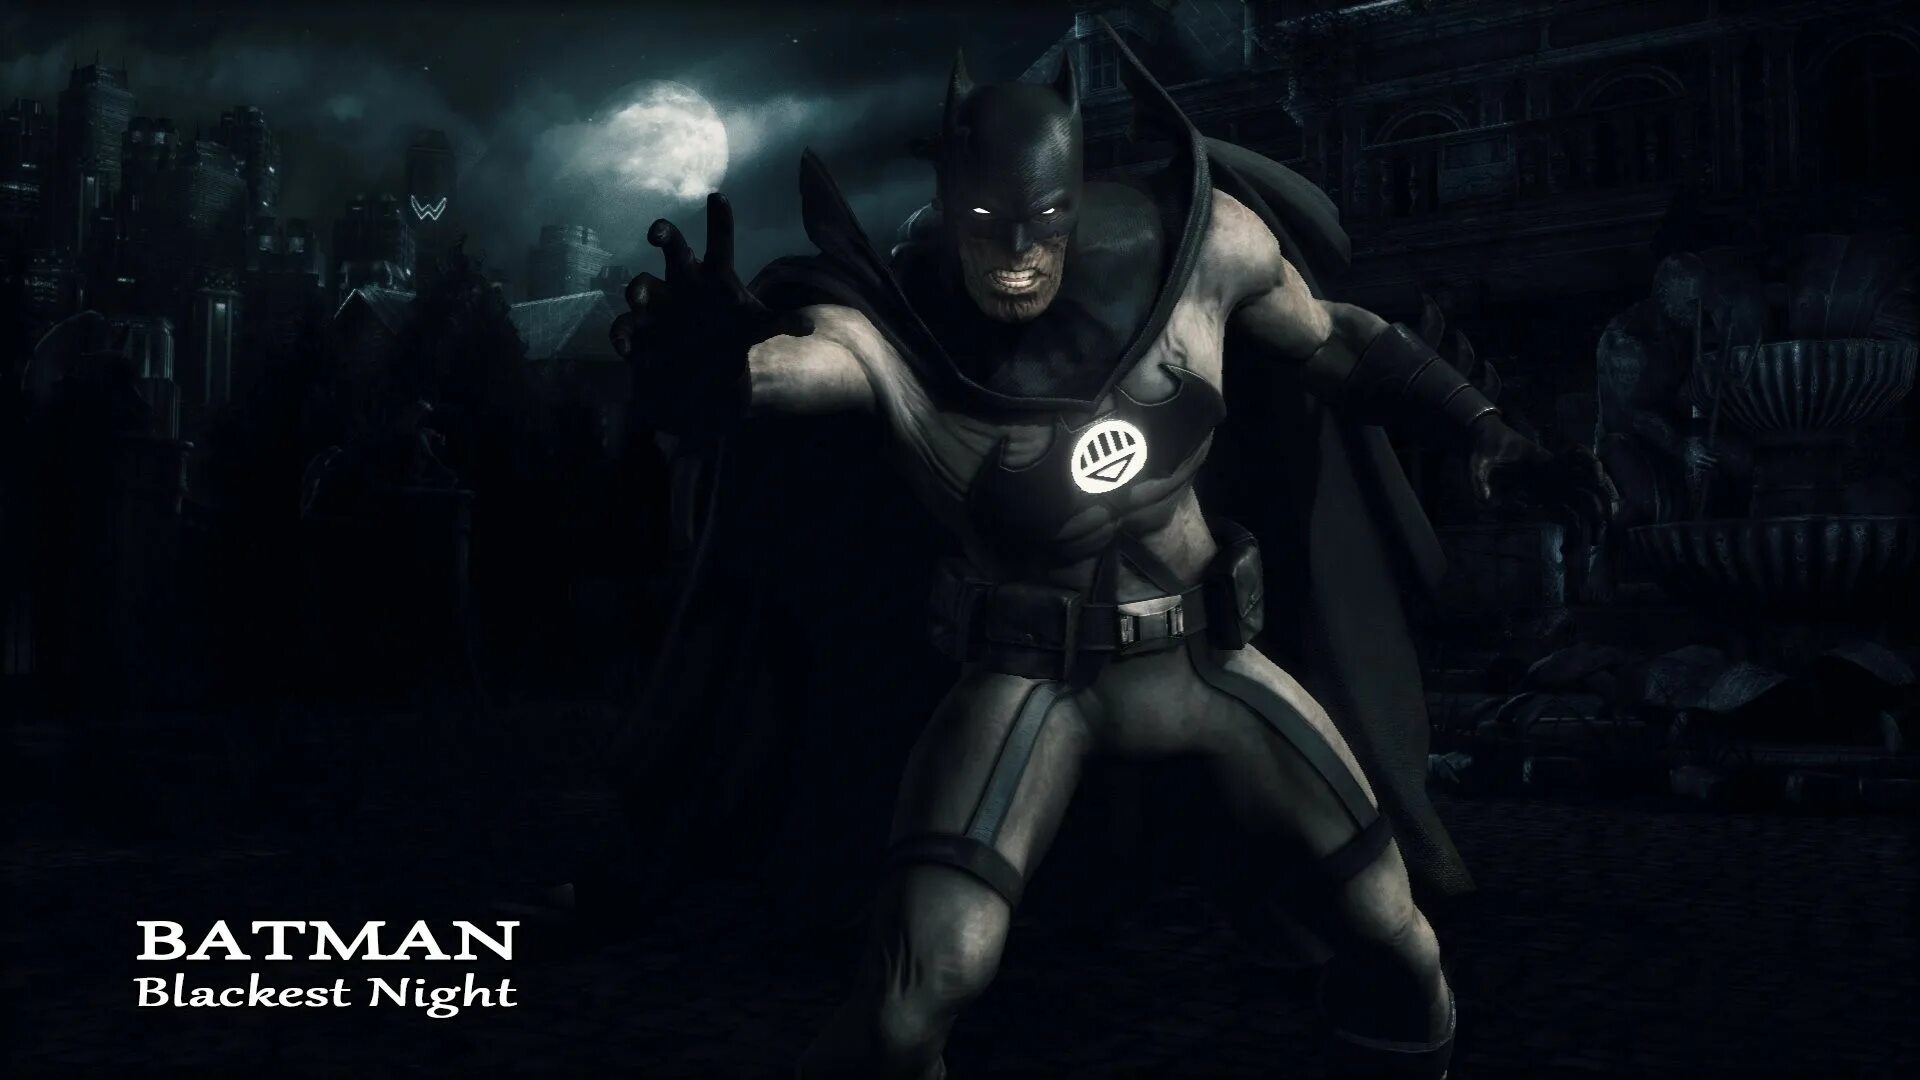 Бэтмен Аркхем Найт. Бэтмен Blackest Night. Игра Бэтмен черный рыцарь. Batman Arkham Knight Blackest Night.